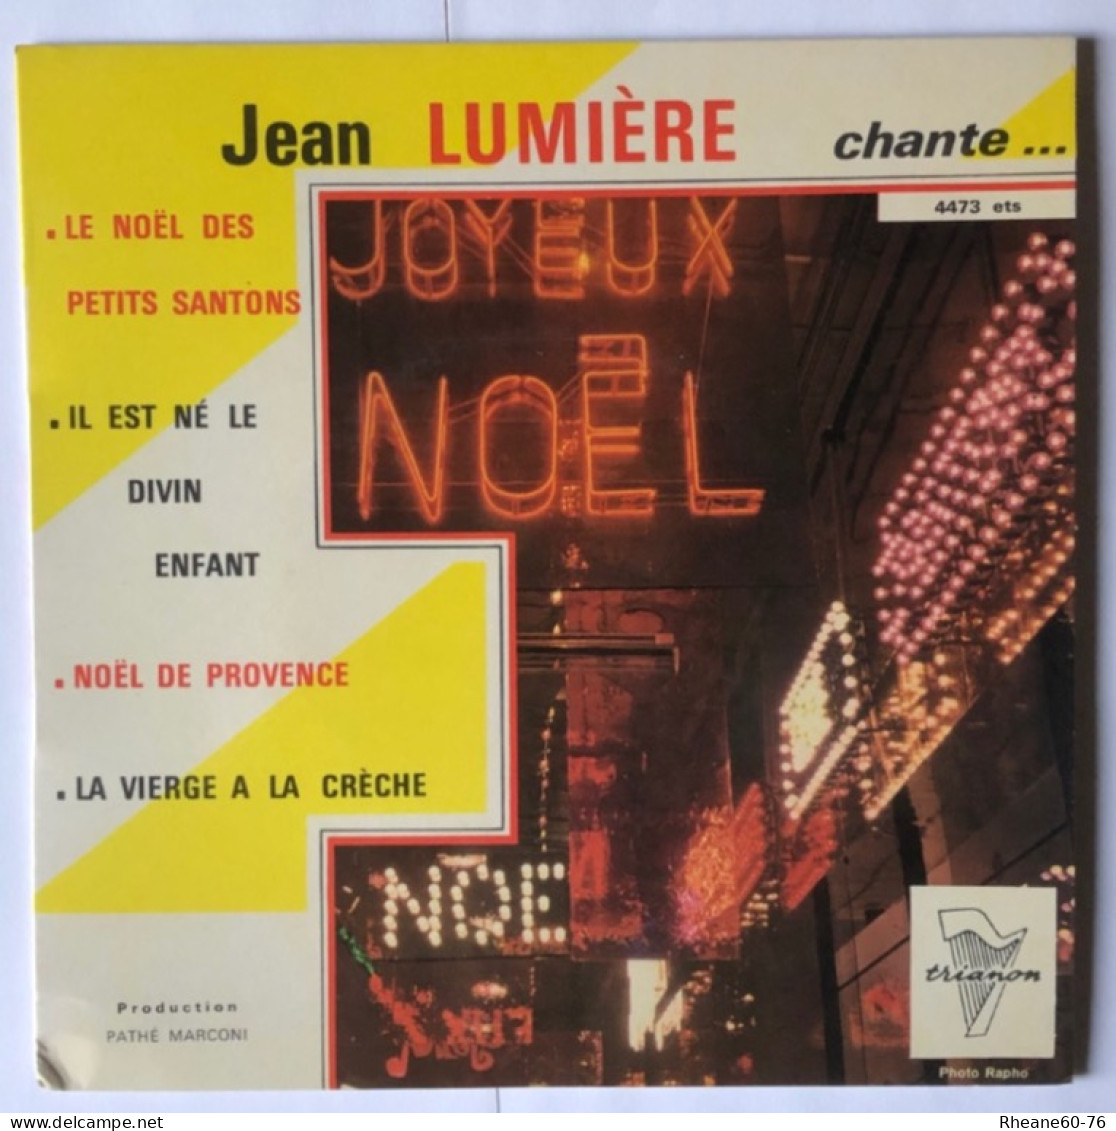 Trianon 4473 ETS - Jean Lumière Chante Noël … - Orchestre Direction Marcel Cariven - Pathé Marconi - Spezialformate